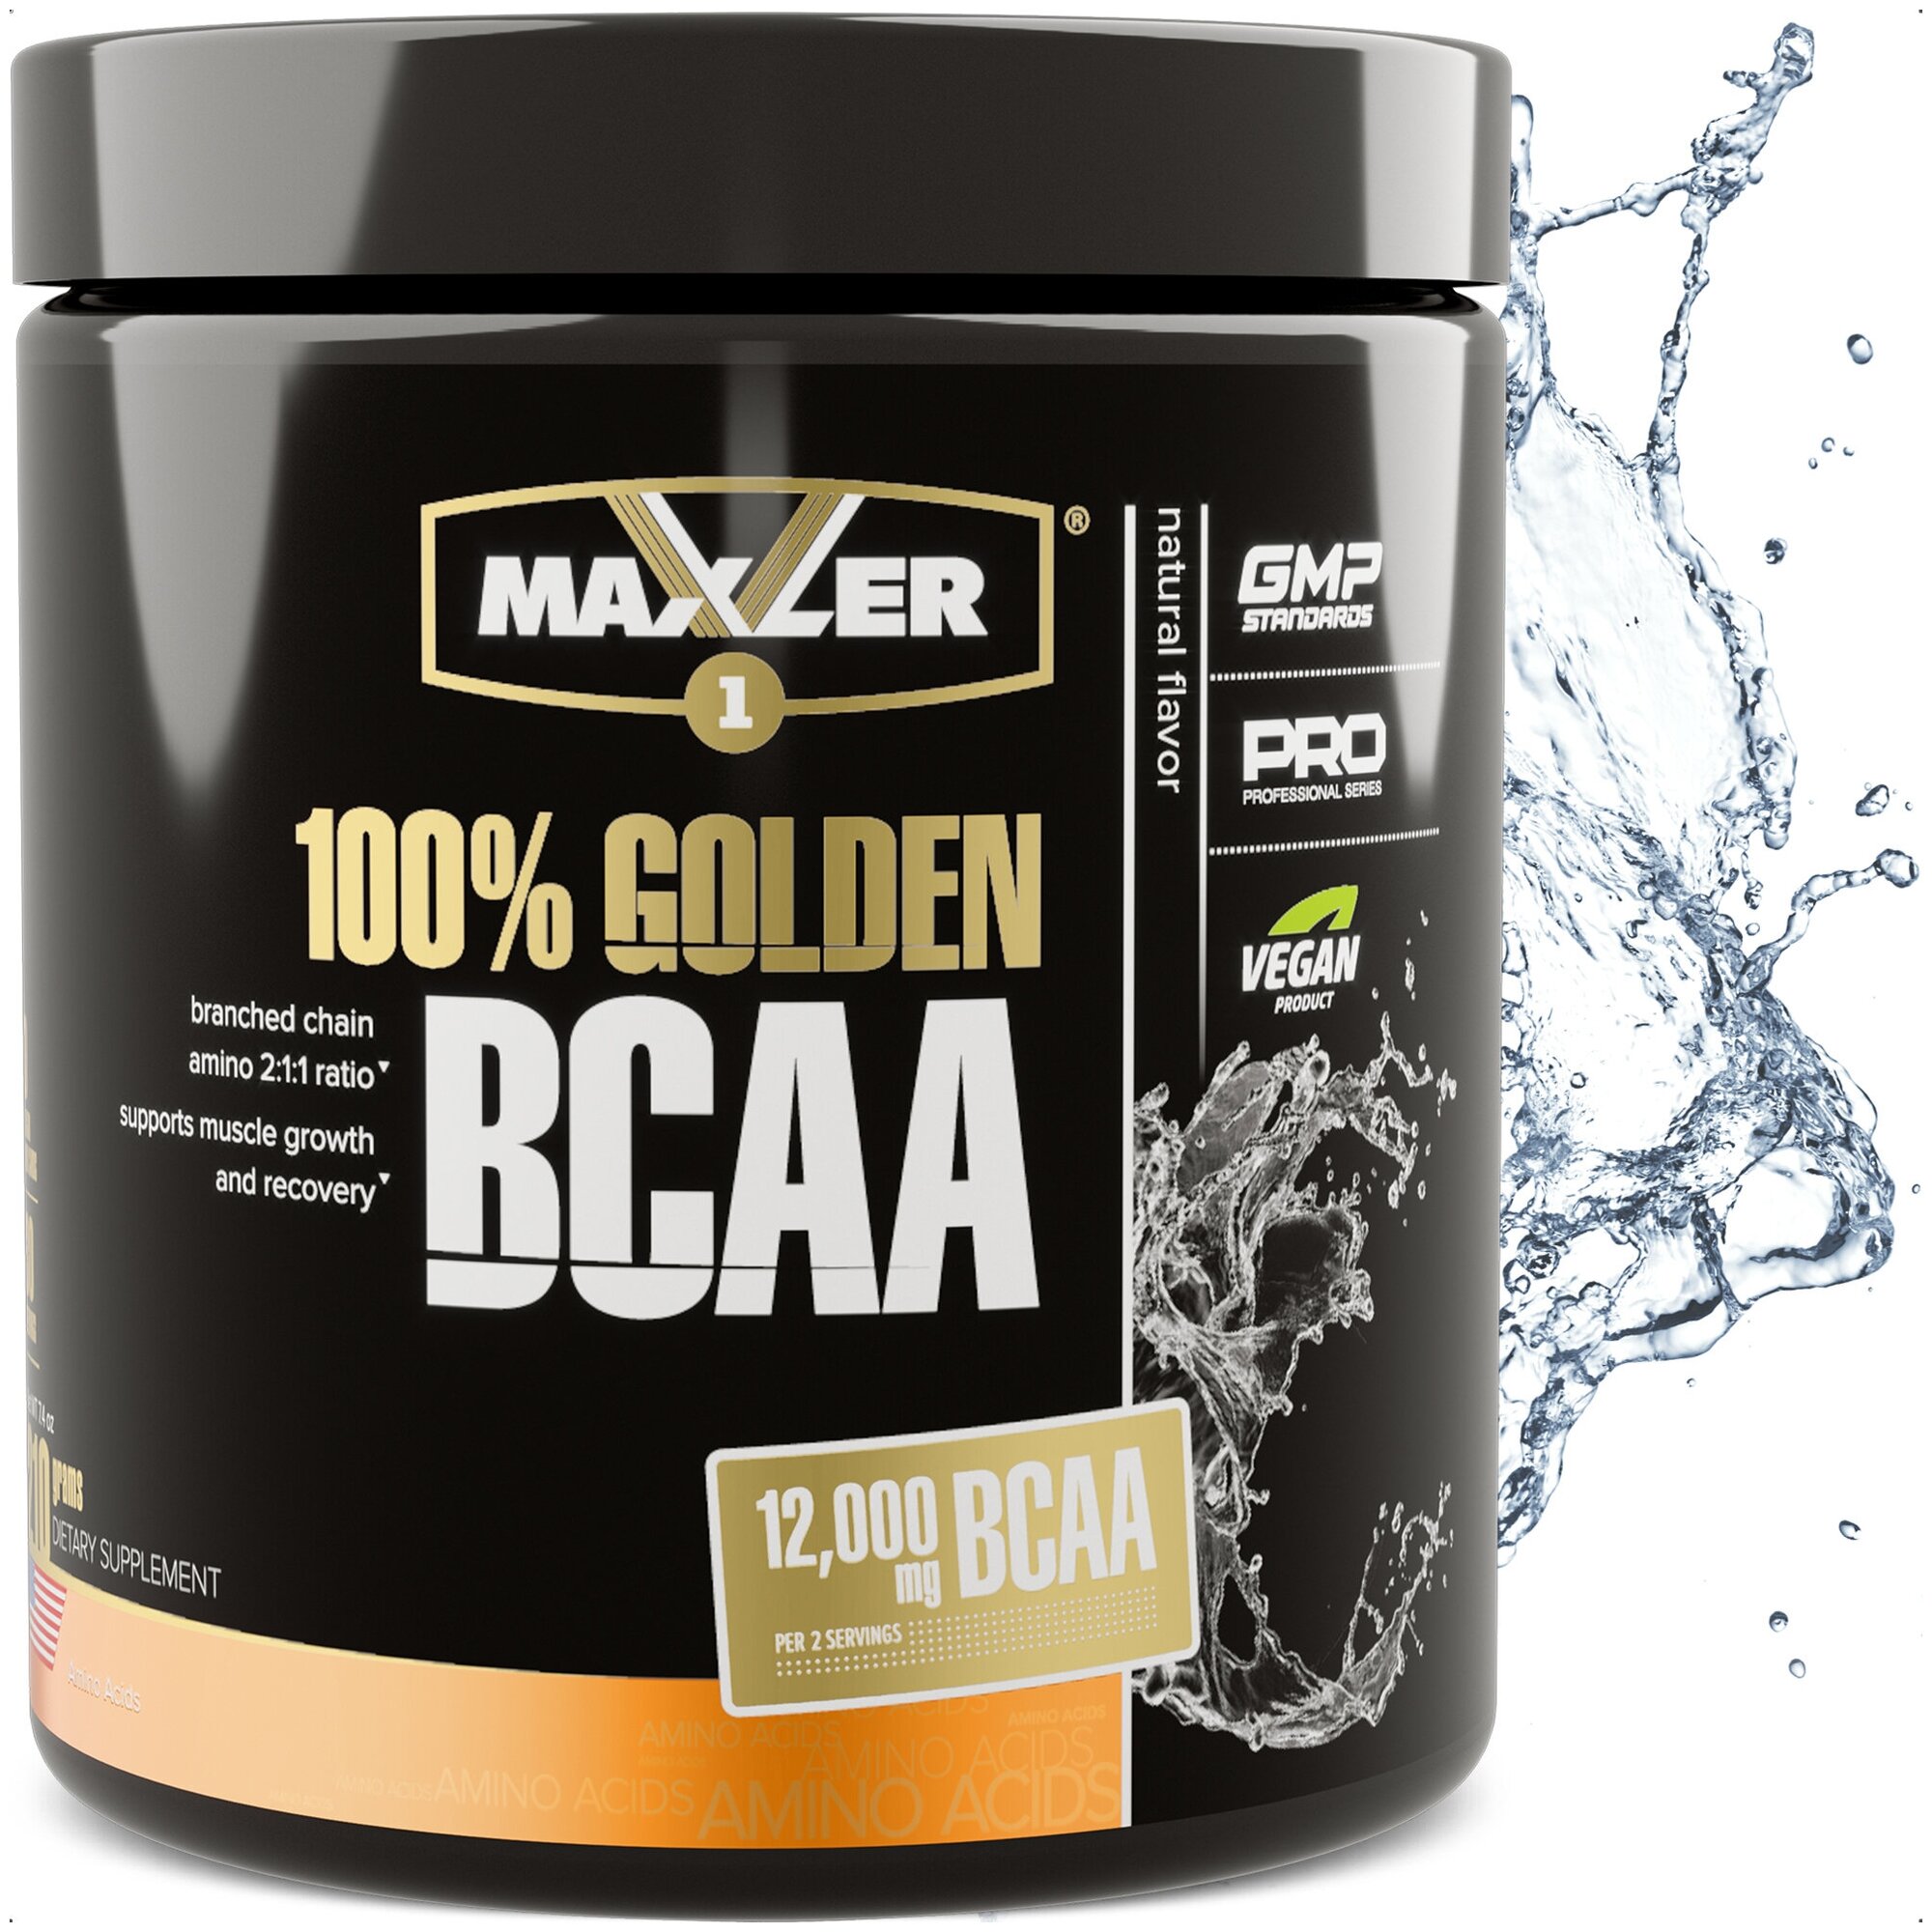 Аминокислоты Maxler 100% Golden BCAA (2:1:1) 210 гр. - Натуральный вкус